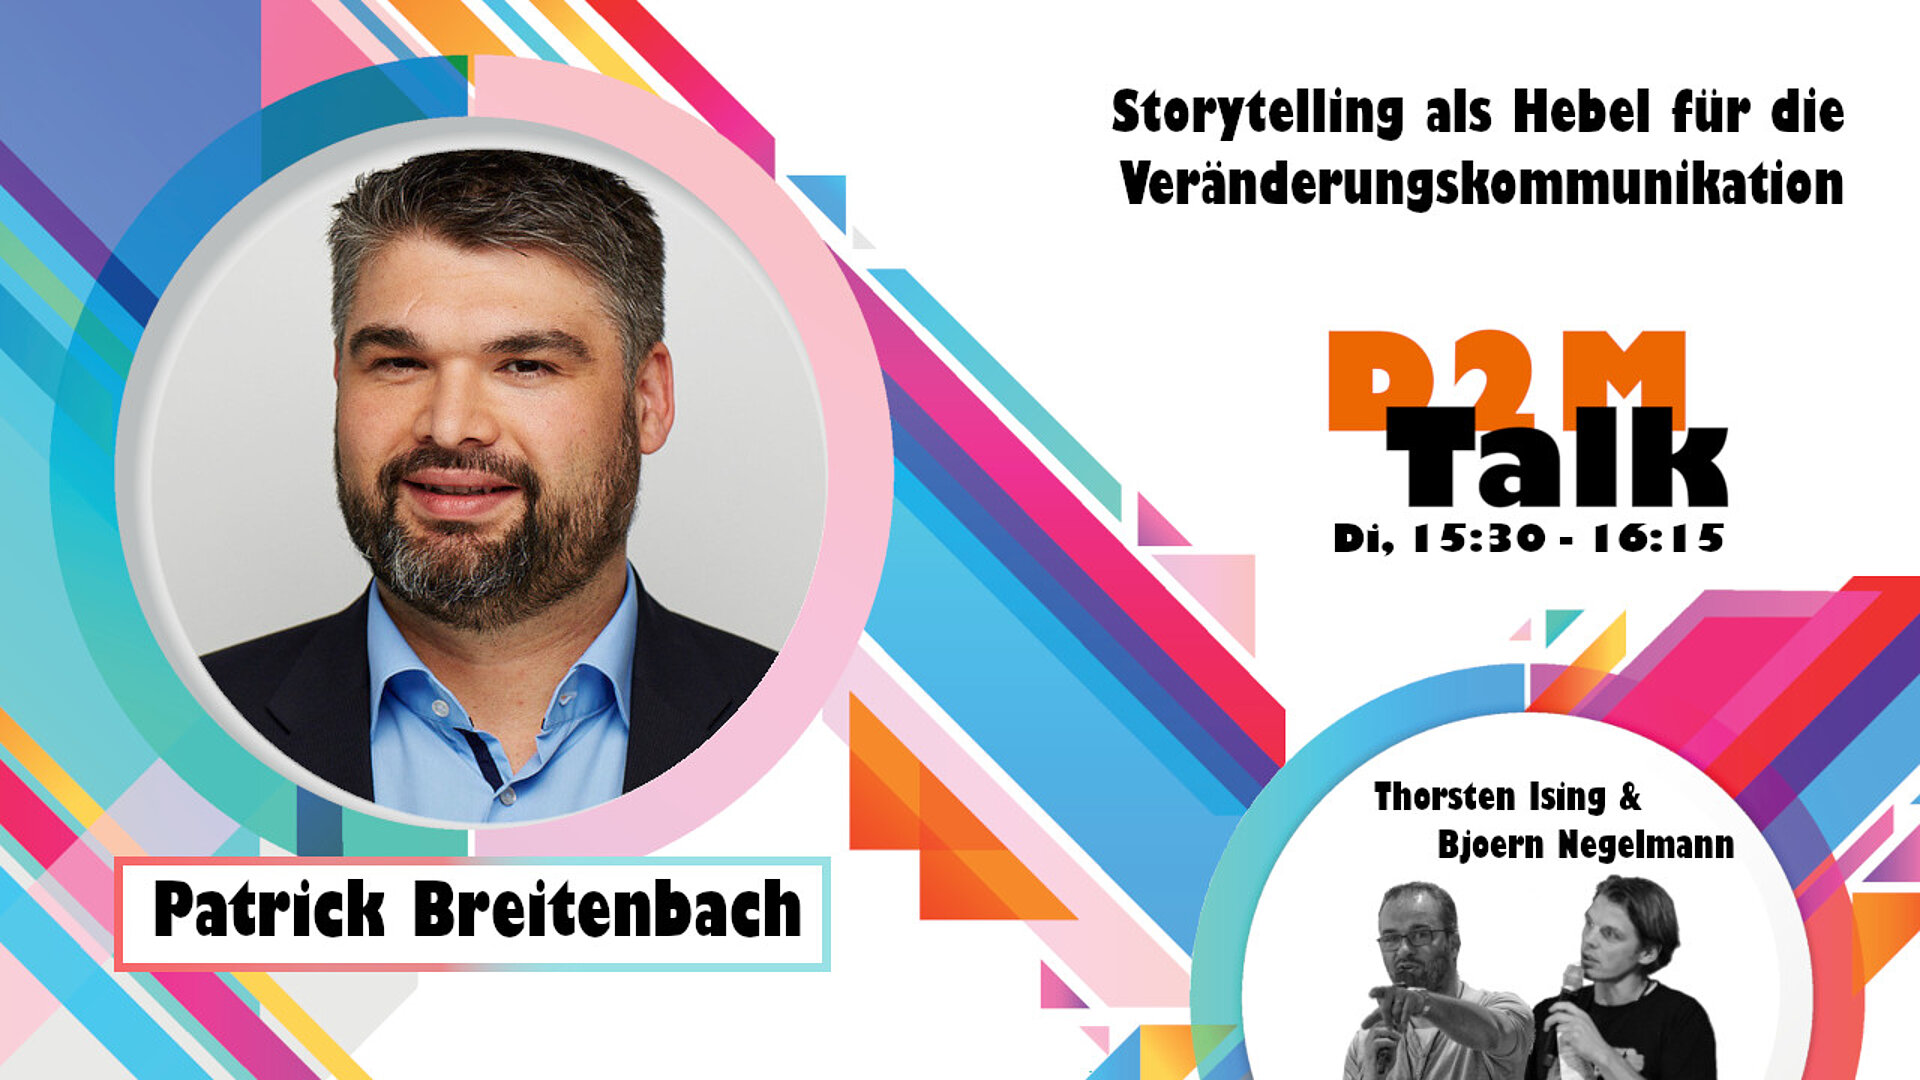 Im Gespräch mit Patrick Breitenbach zu Storytelling als Hebel für die Veränderungskommunikation